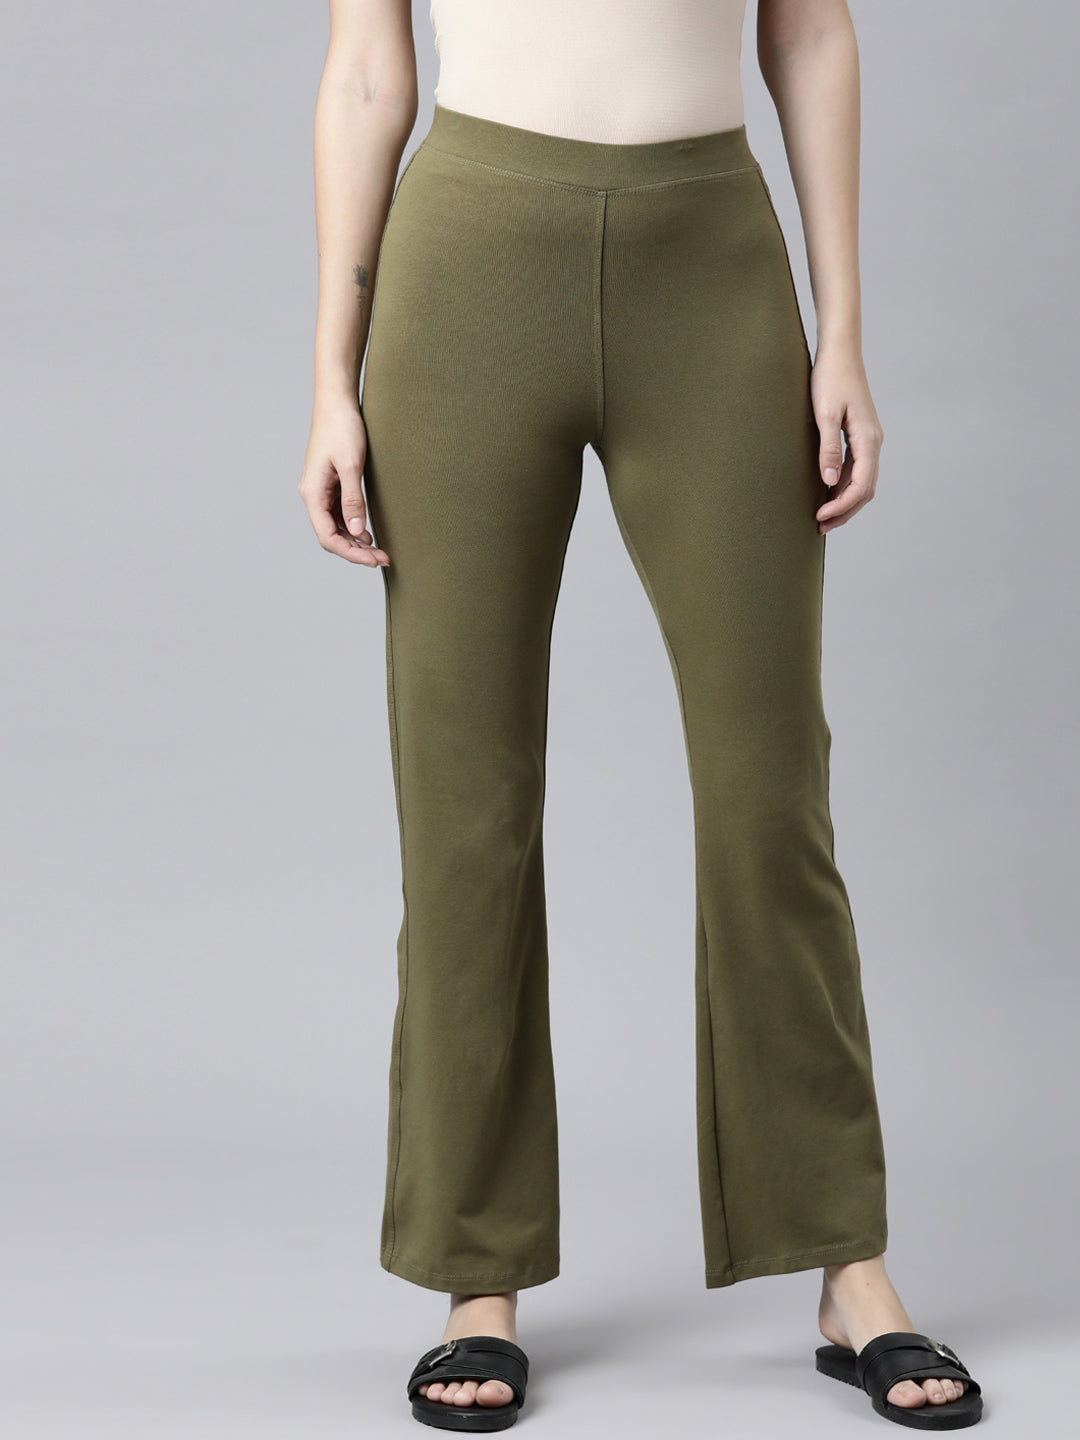 Flared corduroy trousers - Beige - Ladies | H&M IN